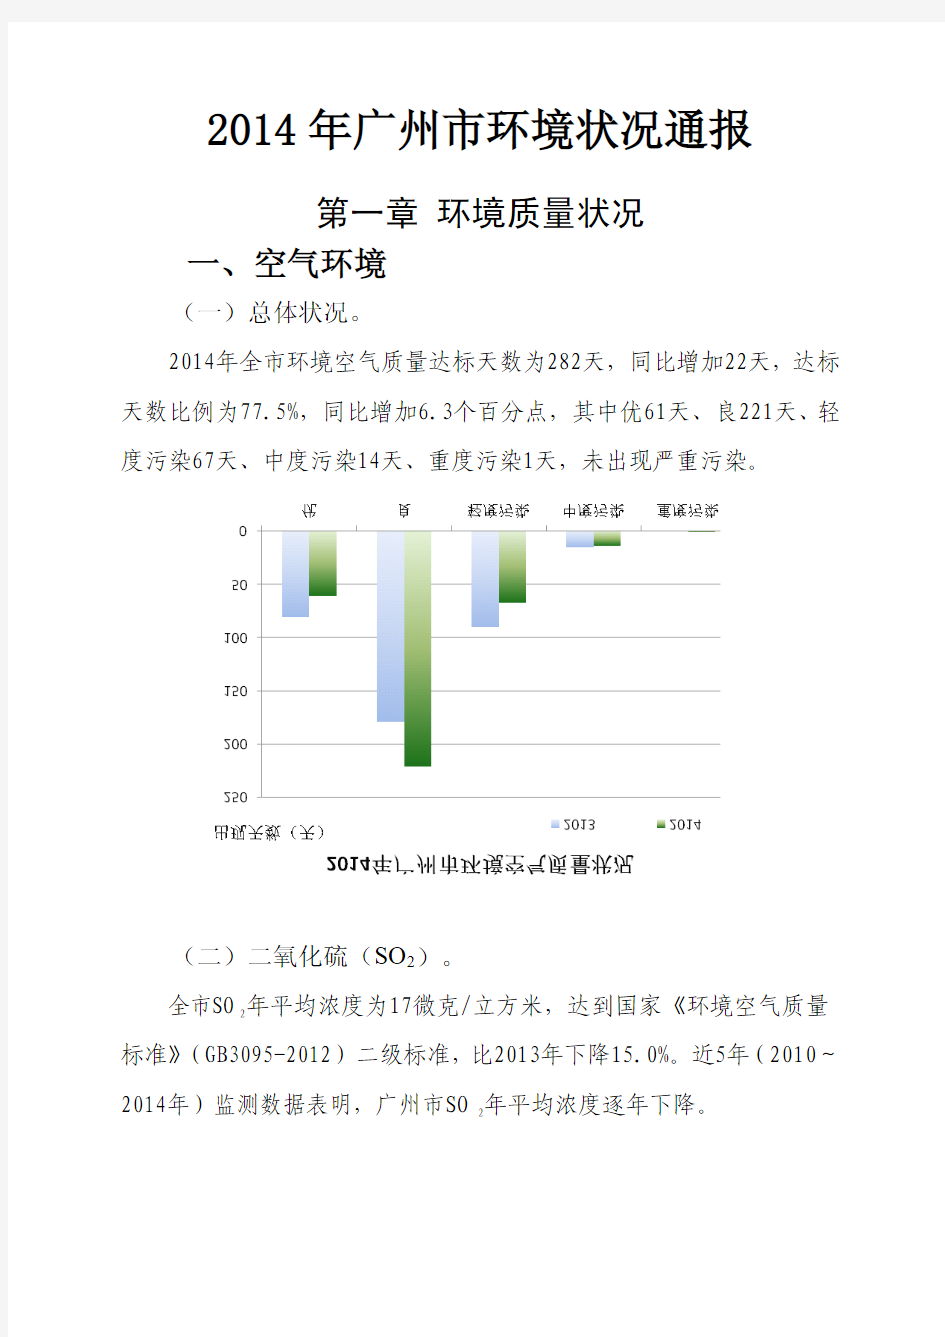 2014年广州市环境状况通报